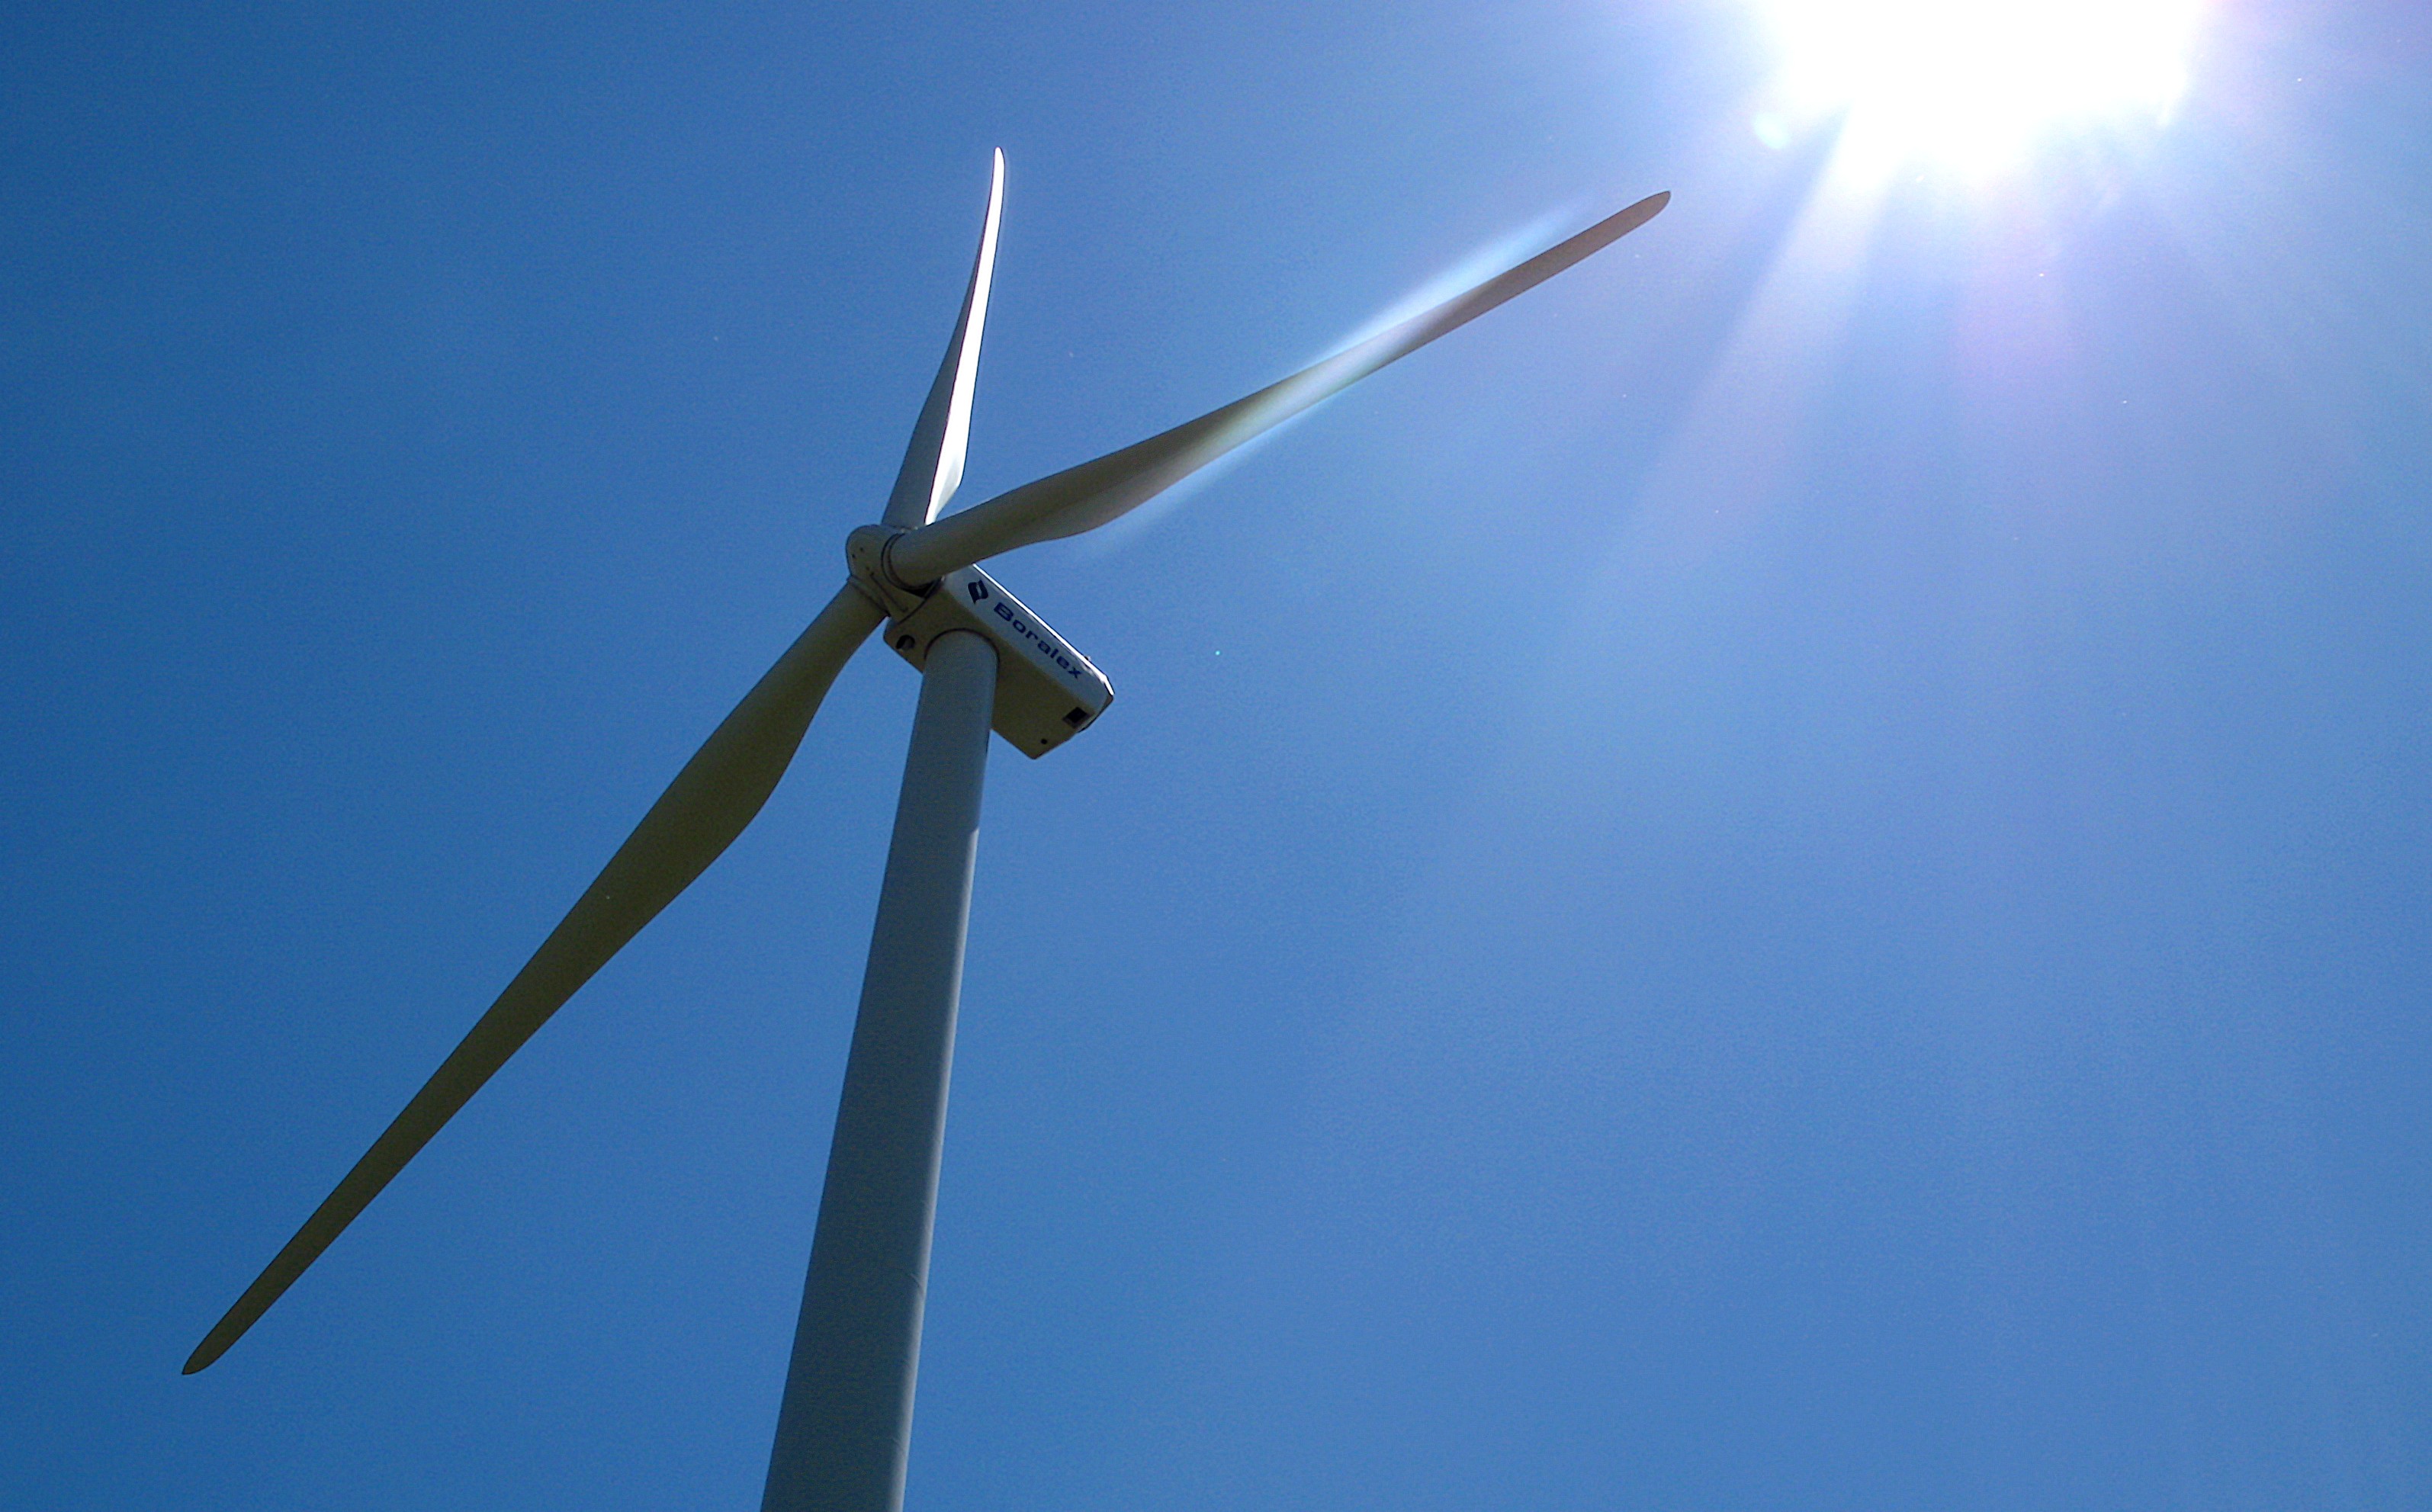 La production d’énergie grâce aux éoliennes est intermittente et non programmable, d’où le besoin de stocker l’électricité produite lorsque le vent souffle. © Dominique, Flickr, CC by-nc-nd 2.0